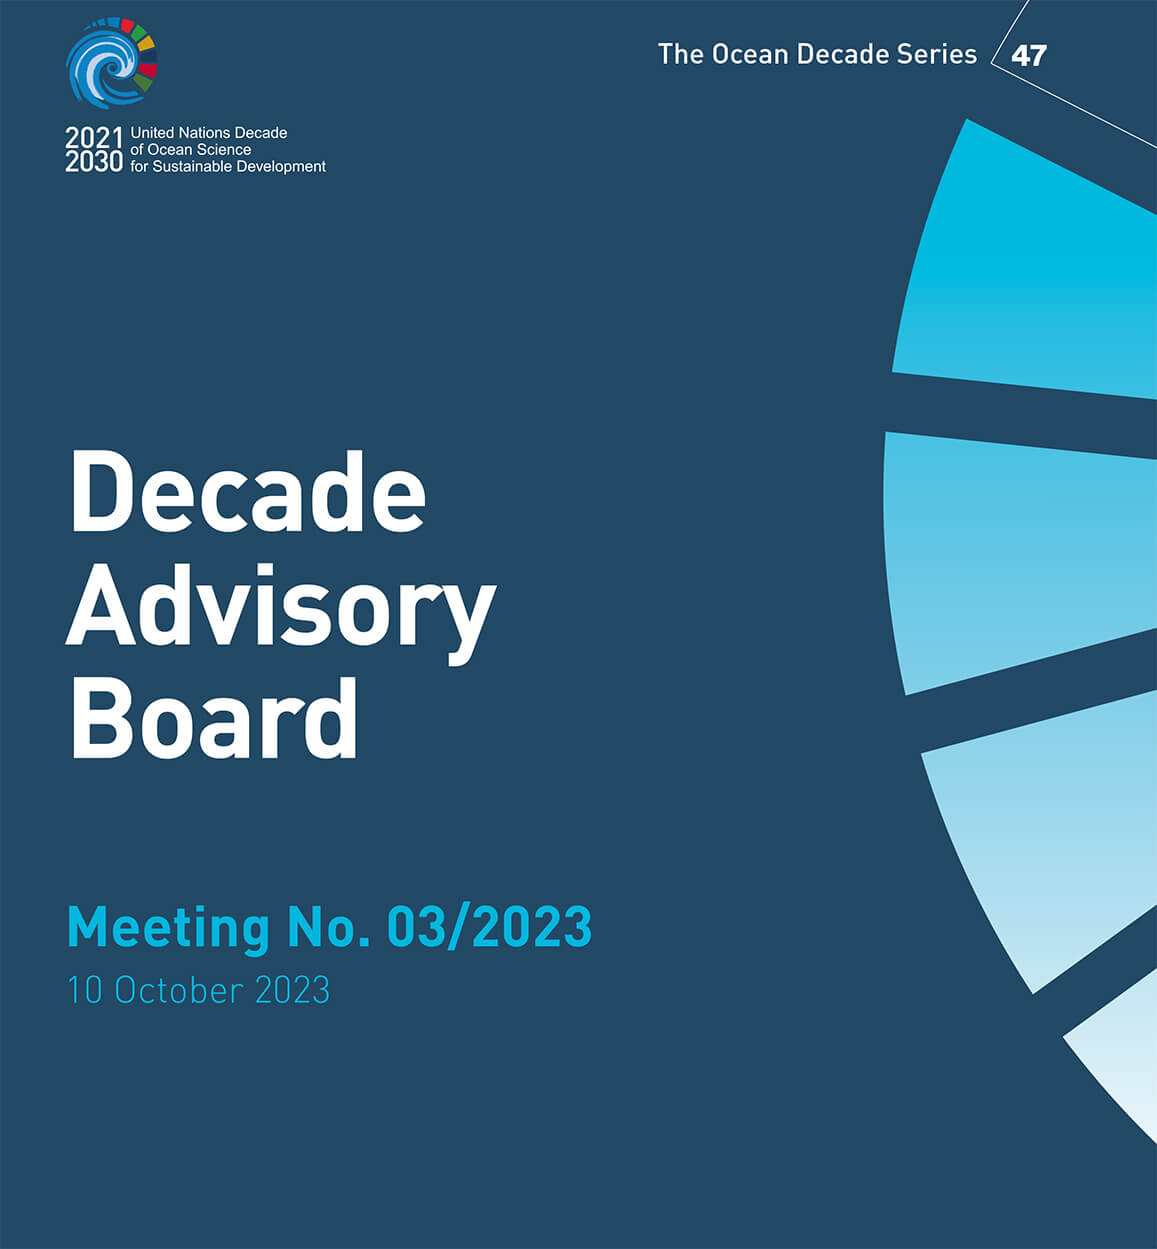 Relatório da sexta reunião do Conselho Consultivo da Década (10 de outubro de 2023)